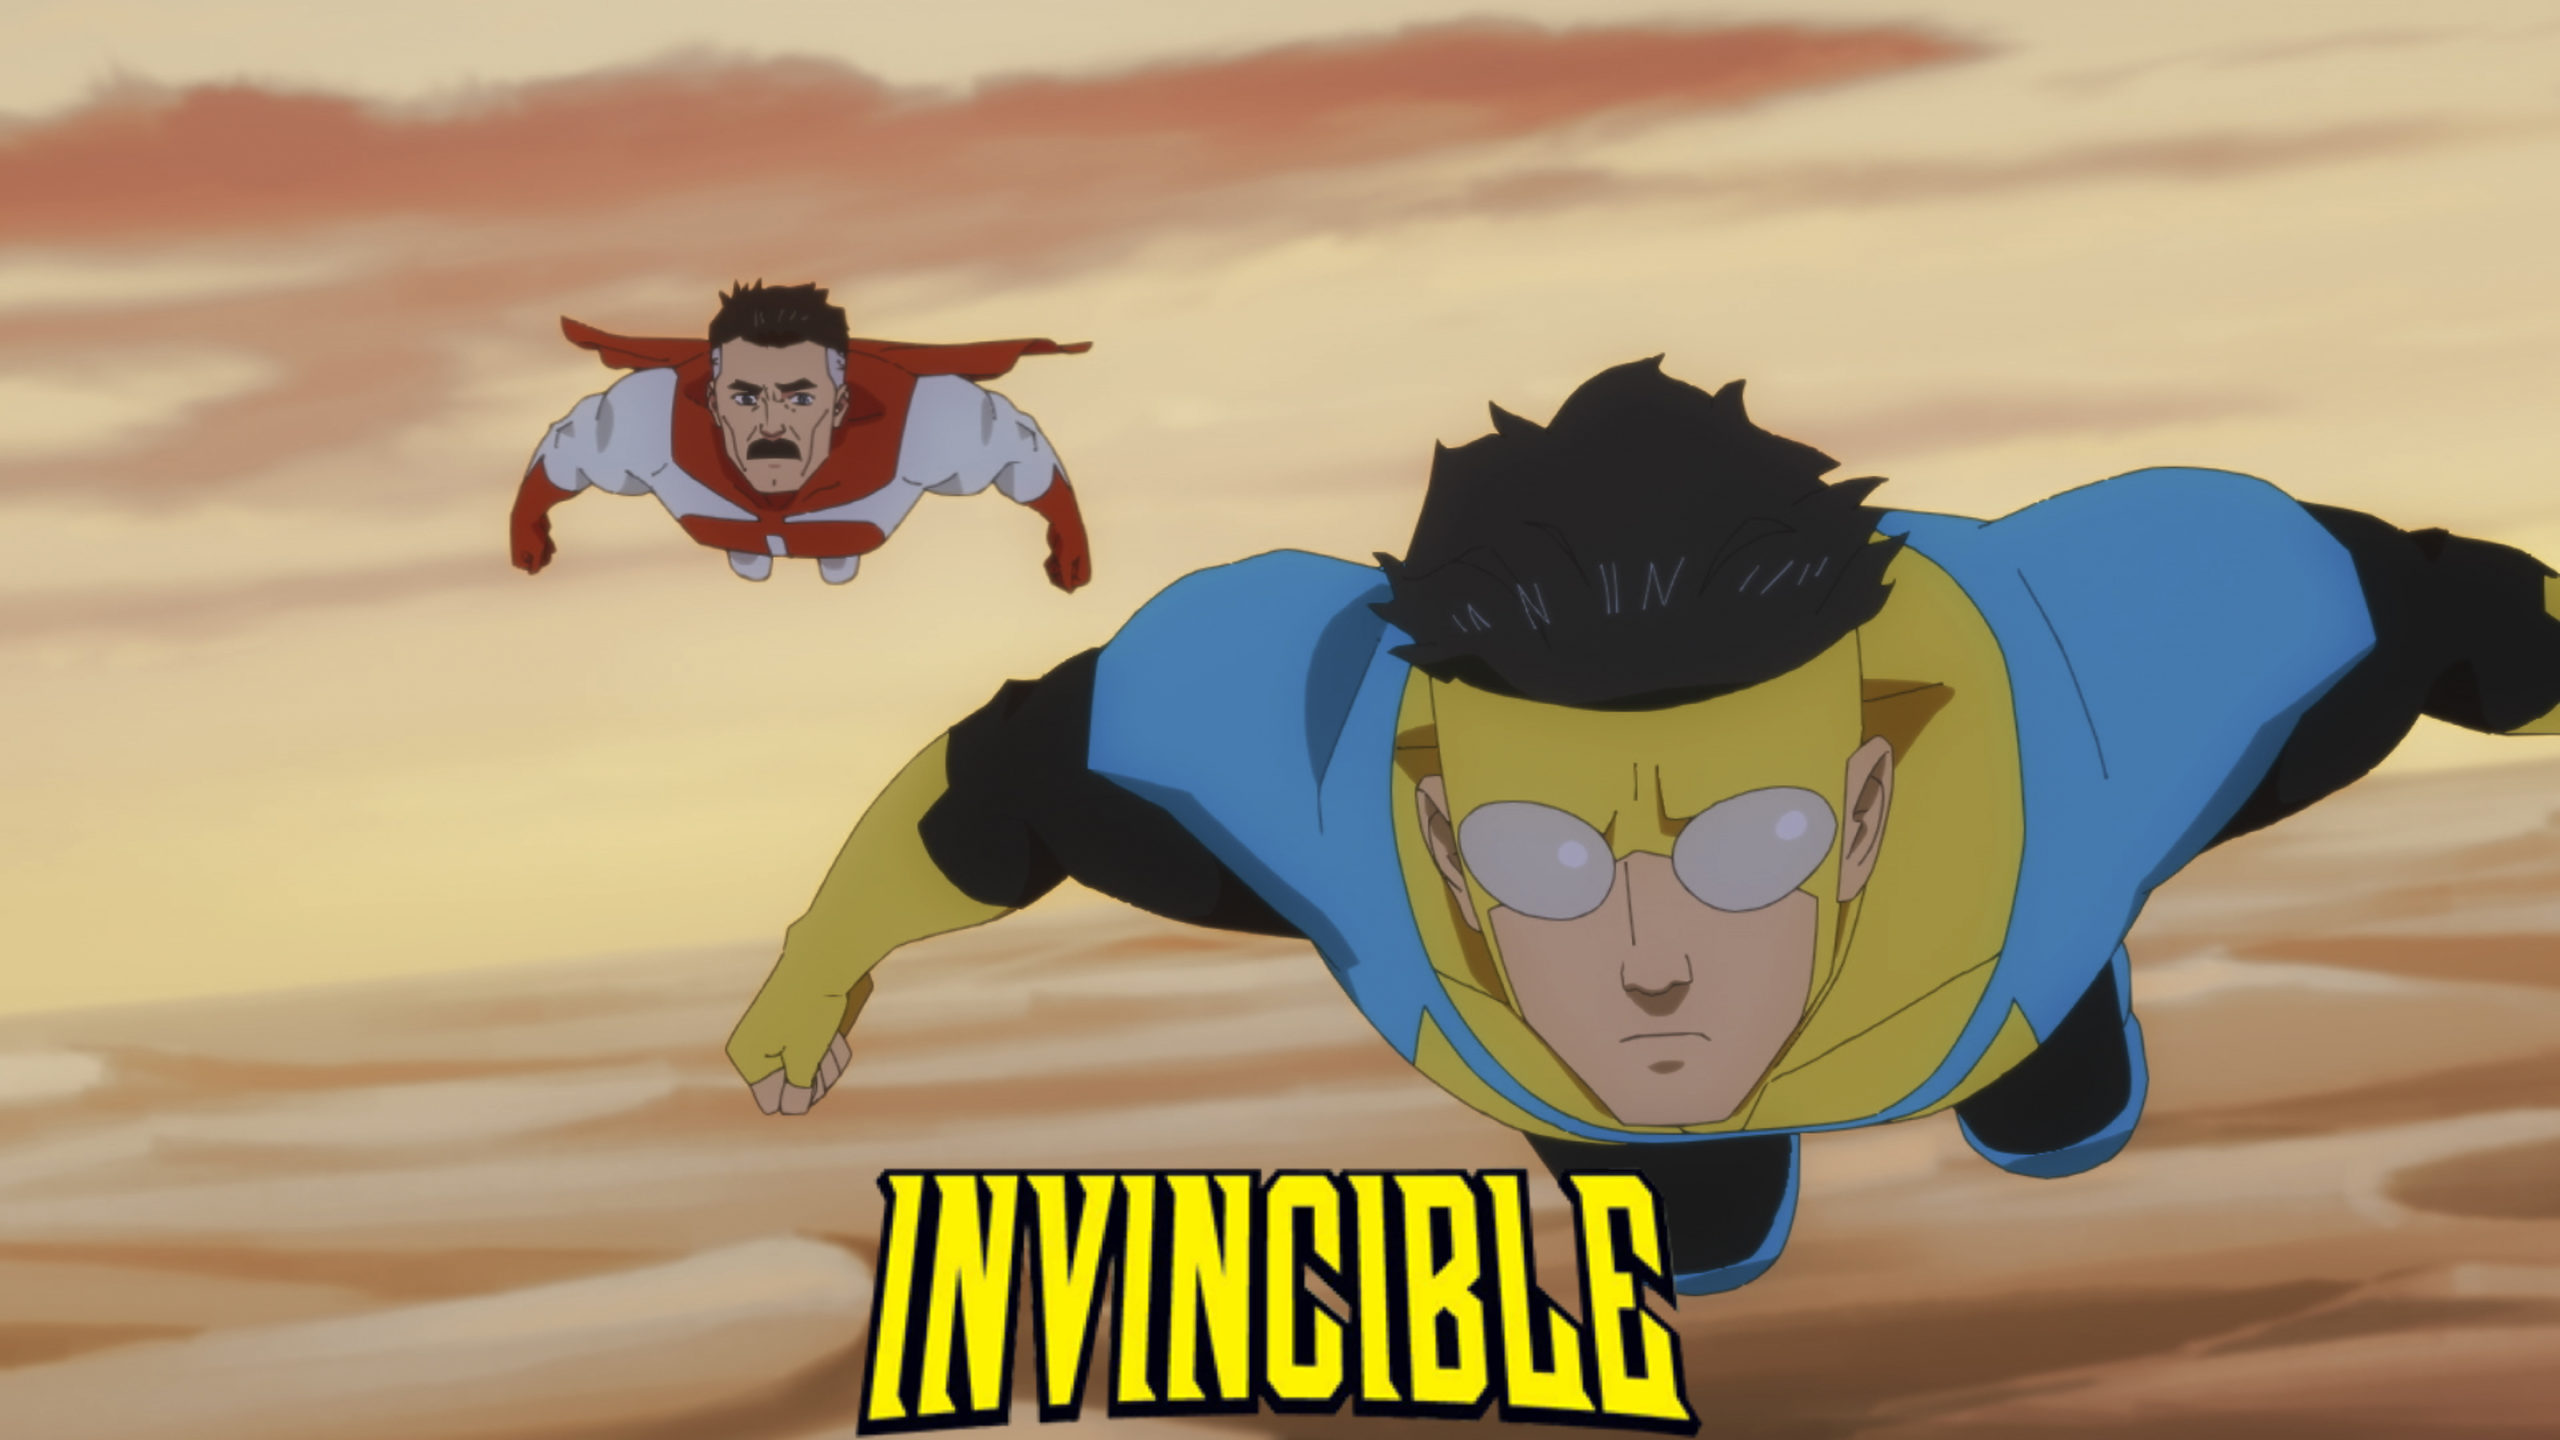 invincible season 2 ep 3 song｜TikTok Search